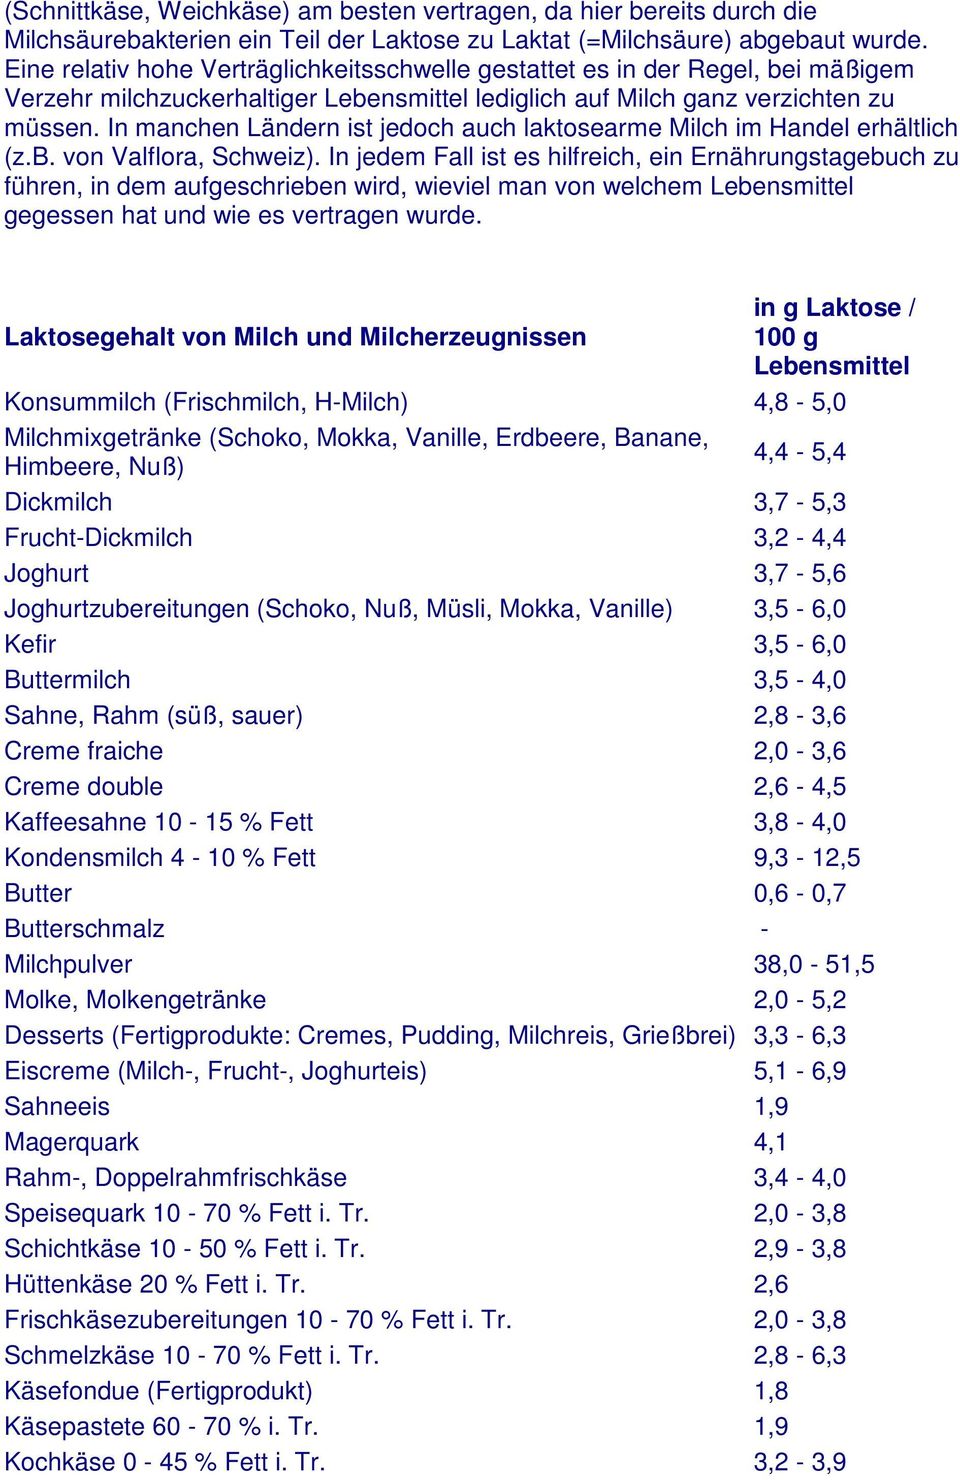 In manchen Ländern ist jedoch auch laktosearme Milch im Handel erhältlich (z.b. von Valflora, Schweiz).